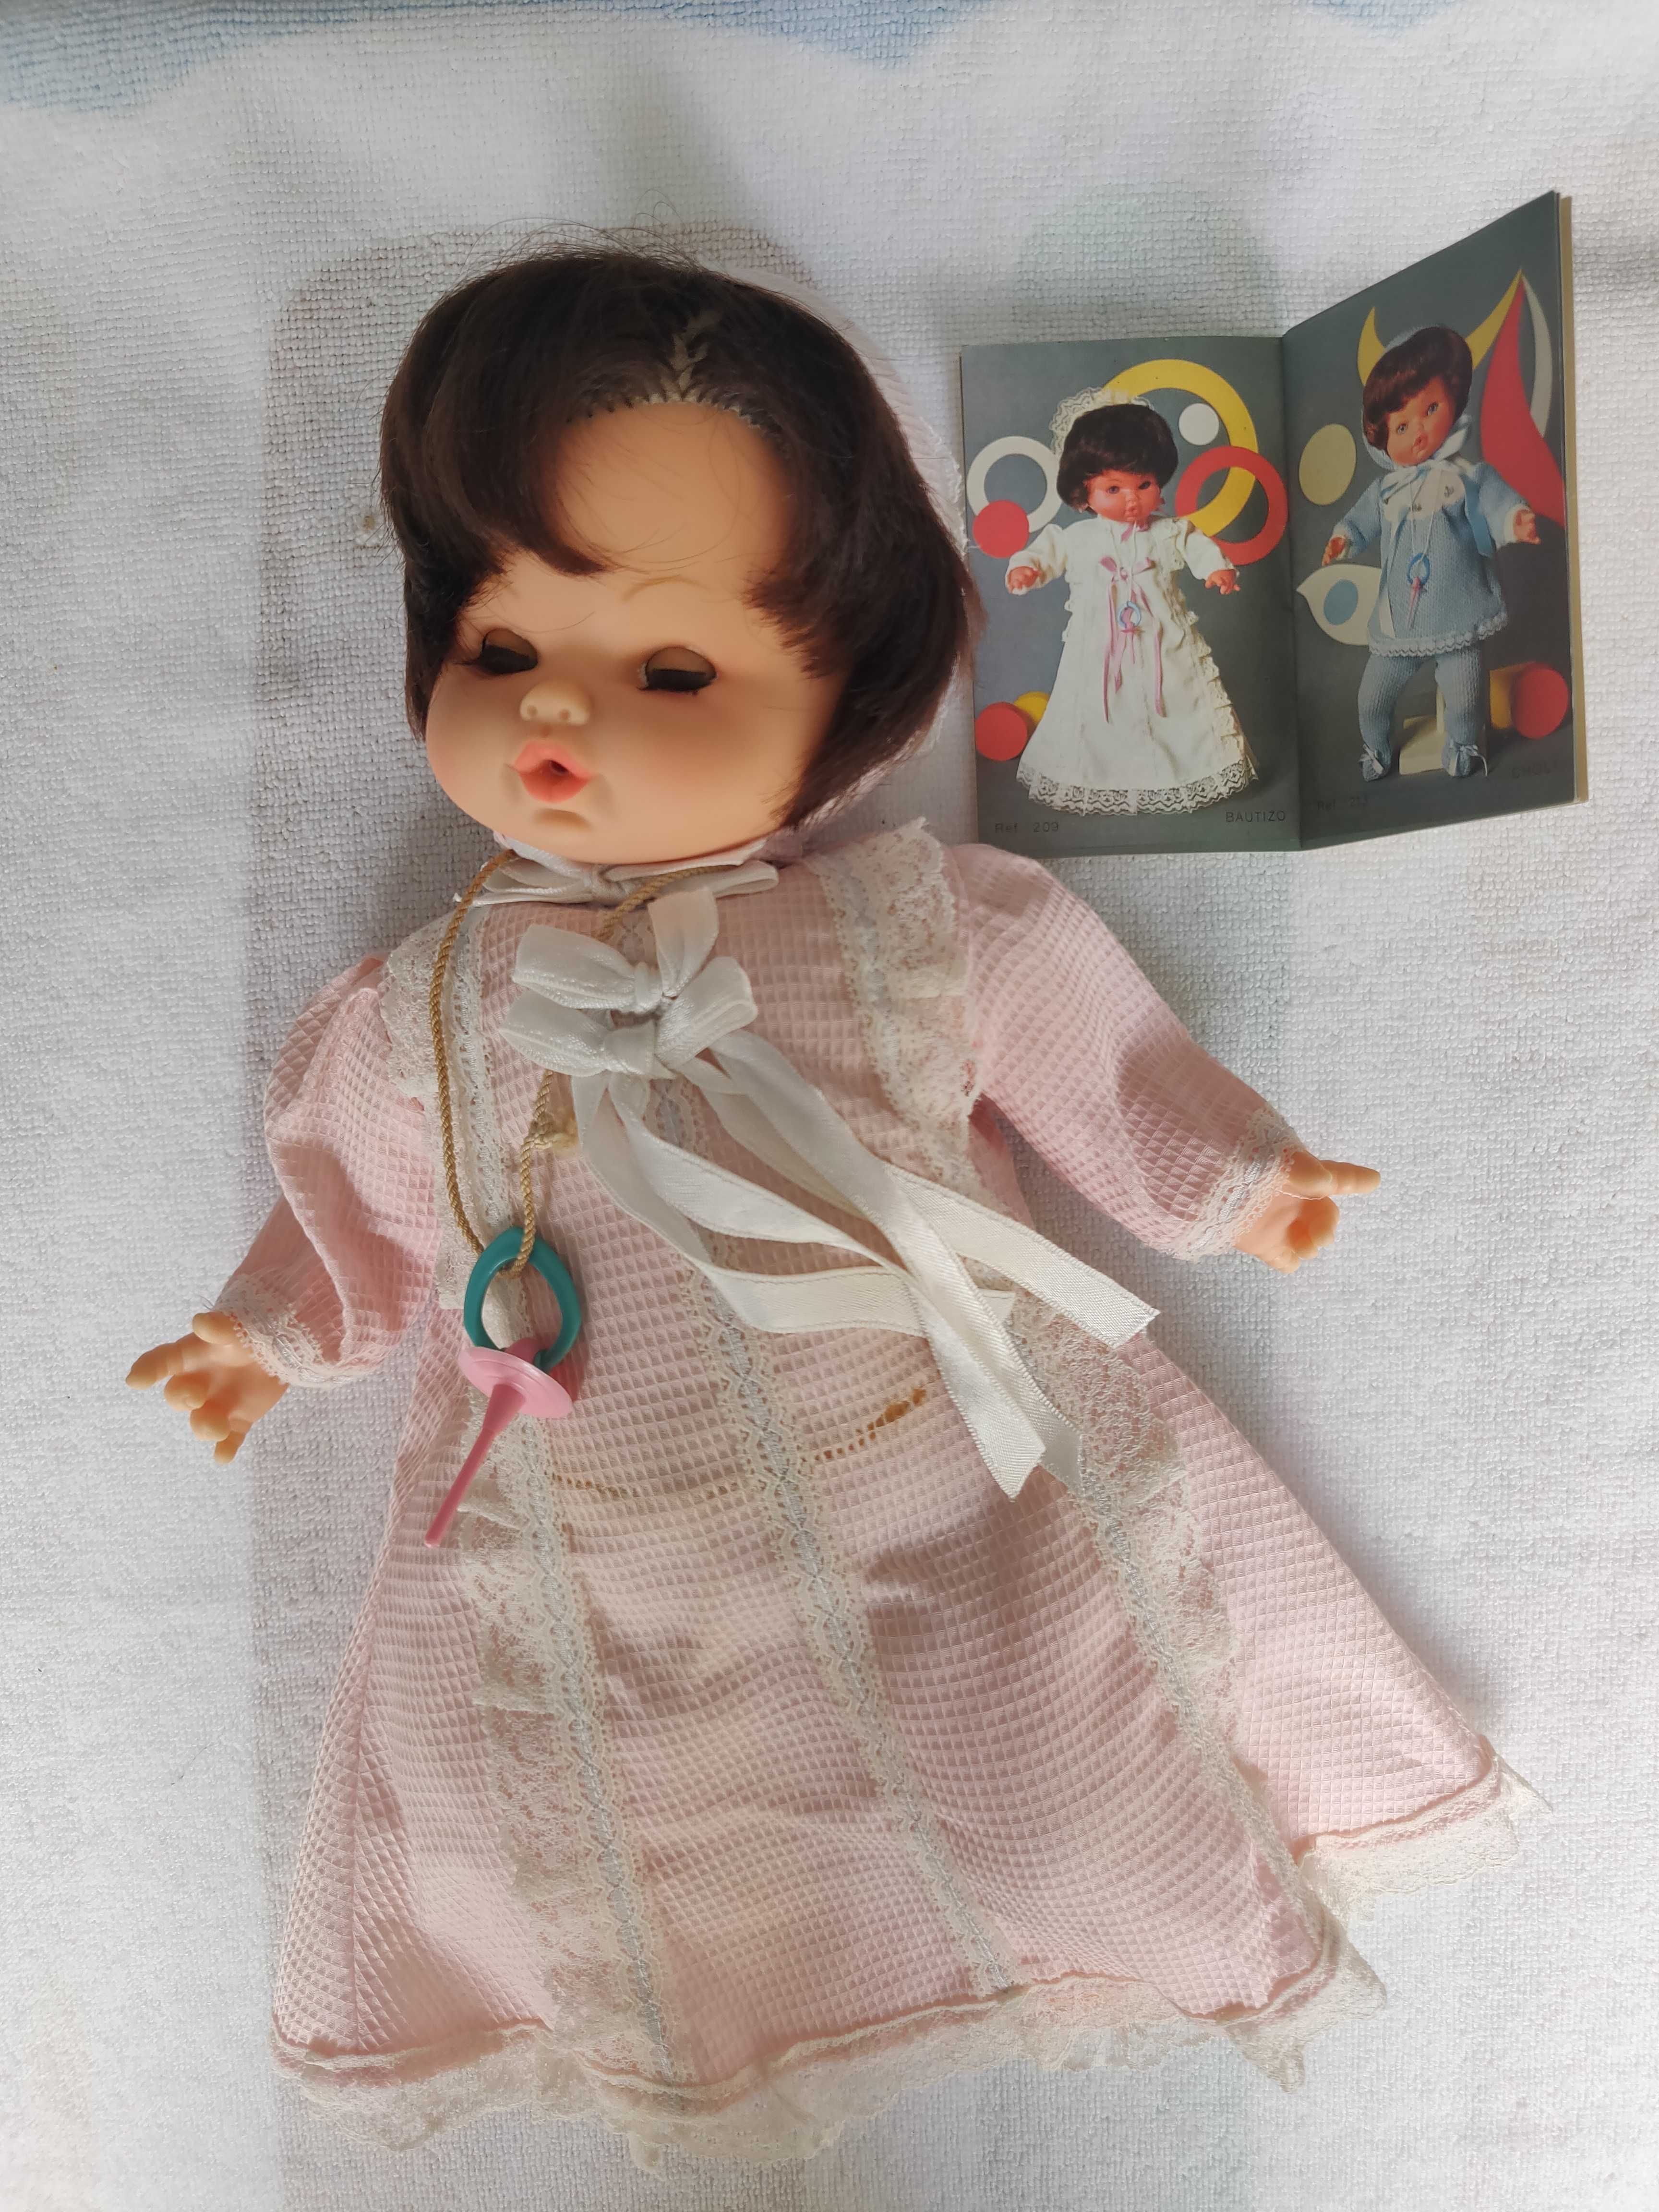 Bonecas e roupas de bonecas antigas Setúbal (São Julião, Nossa